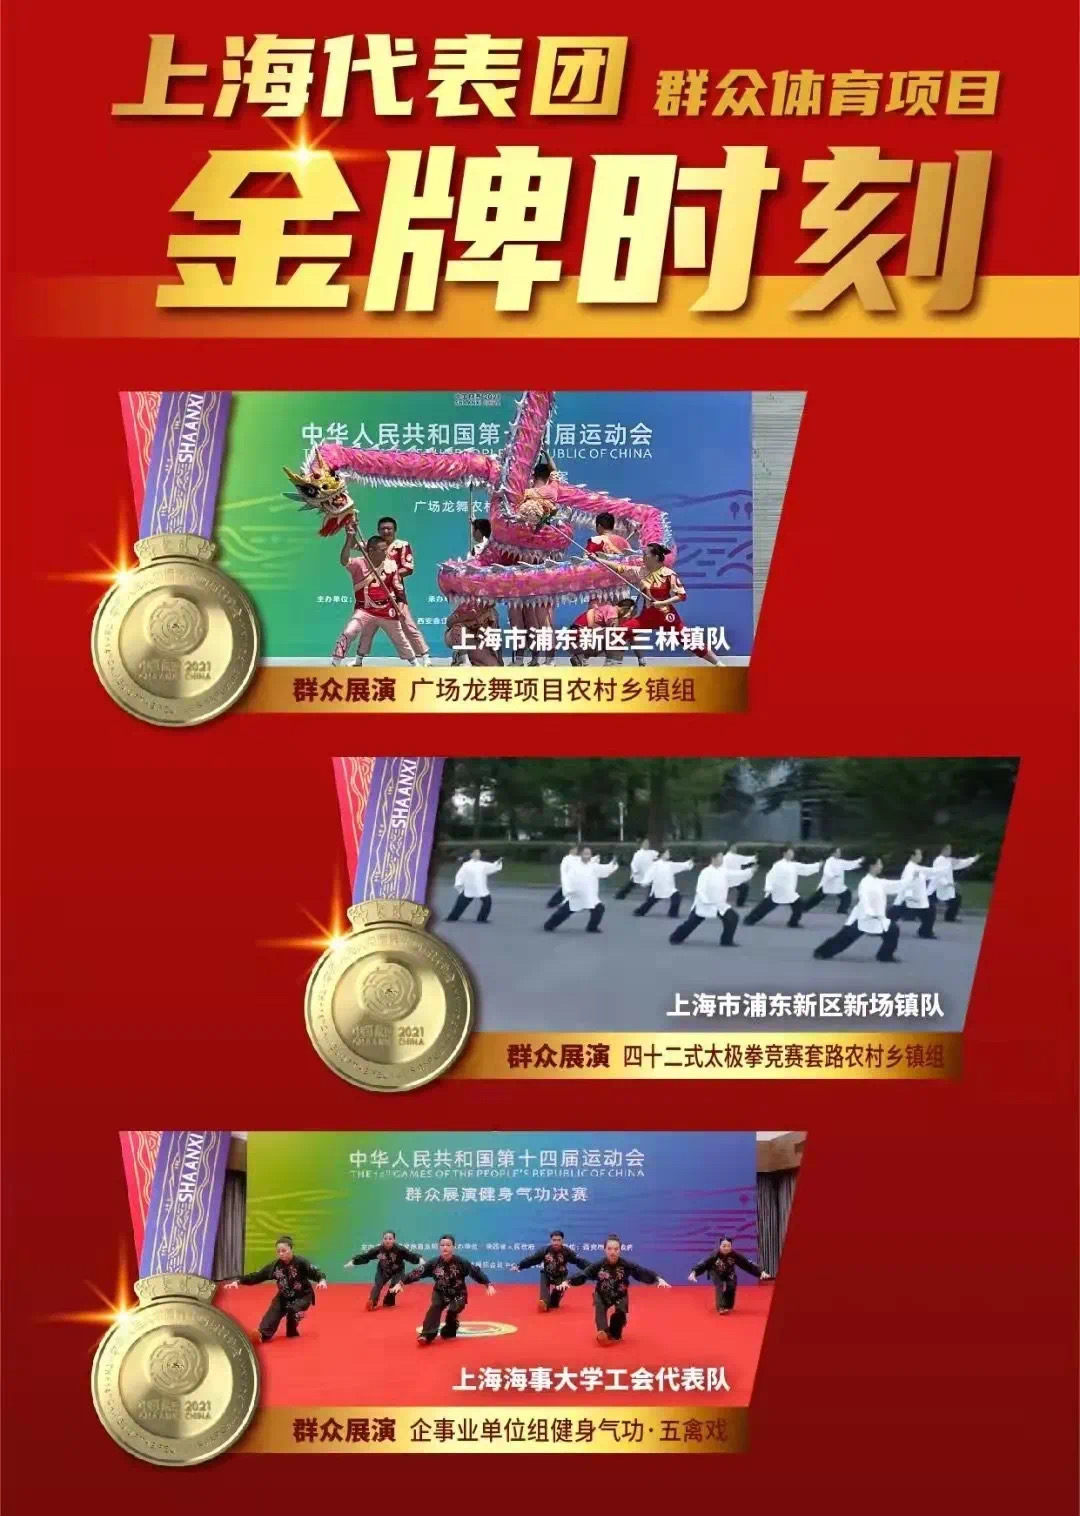 上海代表团群众体育项目金牌时刻.jpg